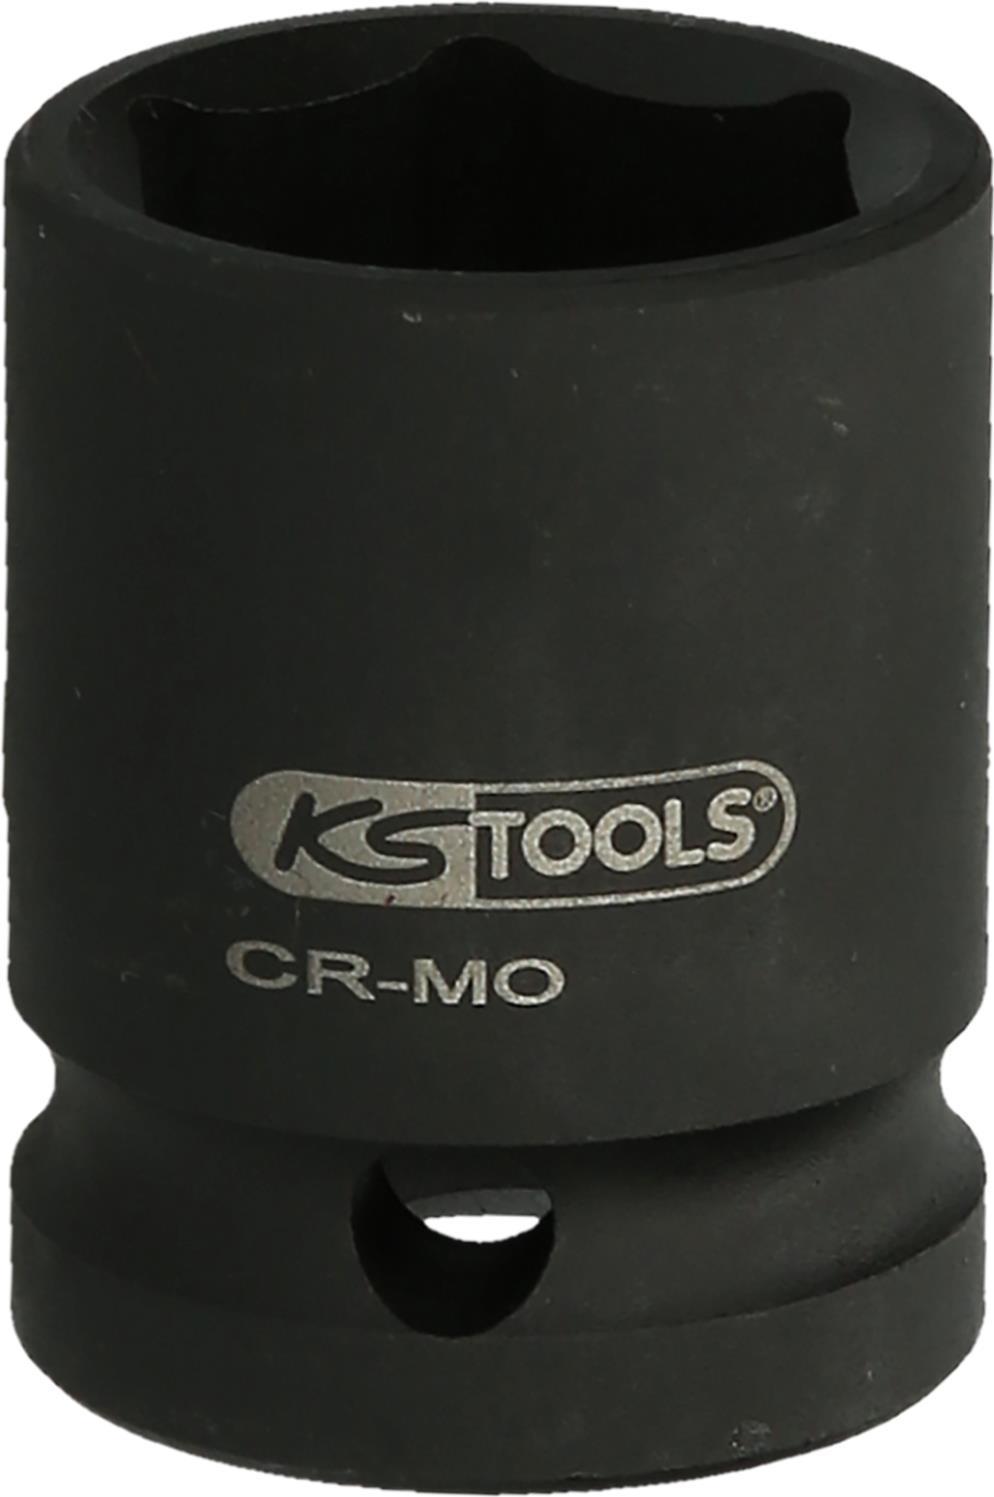 KS TOOLS Werkzeuge-Maschinen GmbH 1.1/2\" Sechskant-Kraft-Stecknuss, 85 mm, kurz (515.2151)